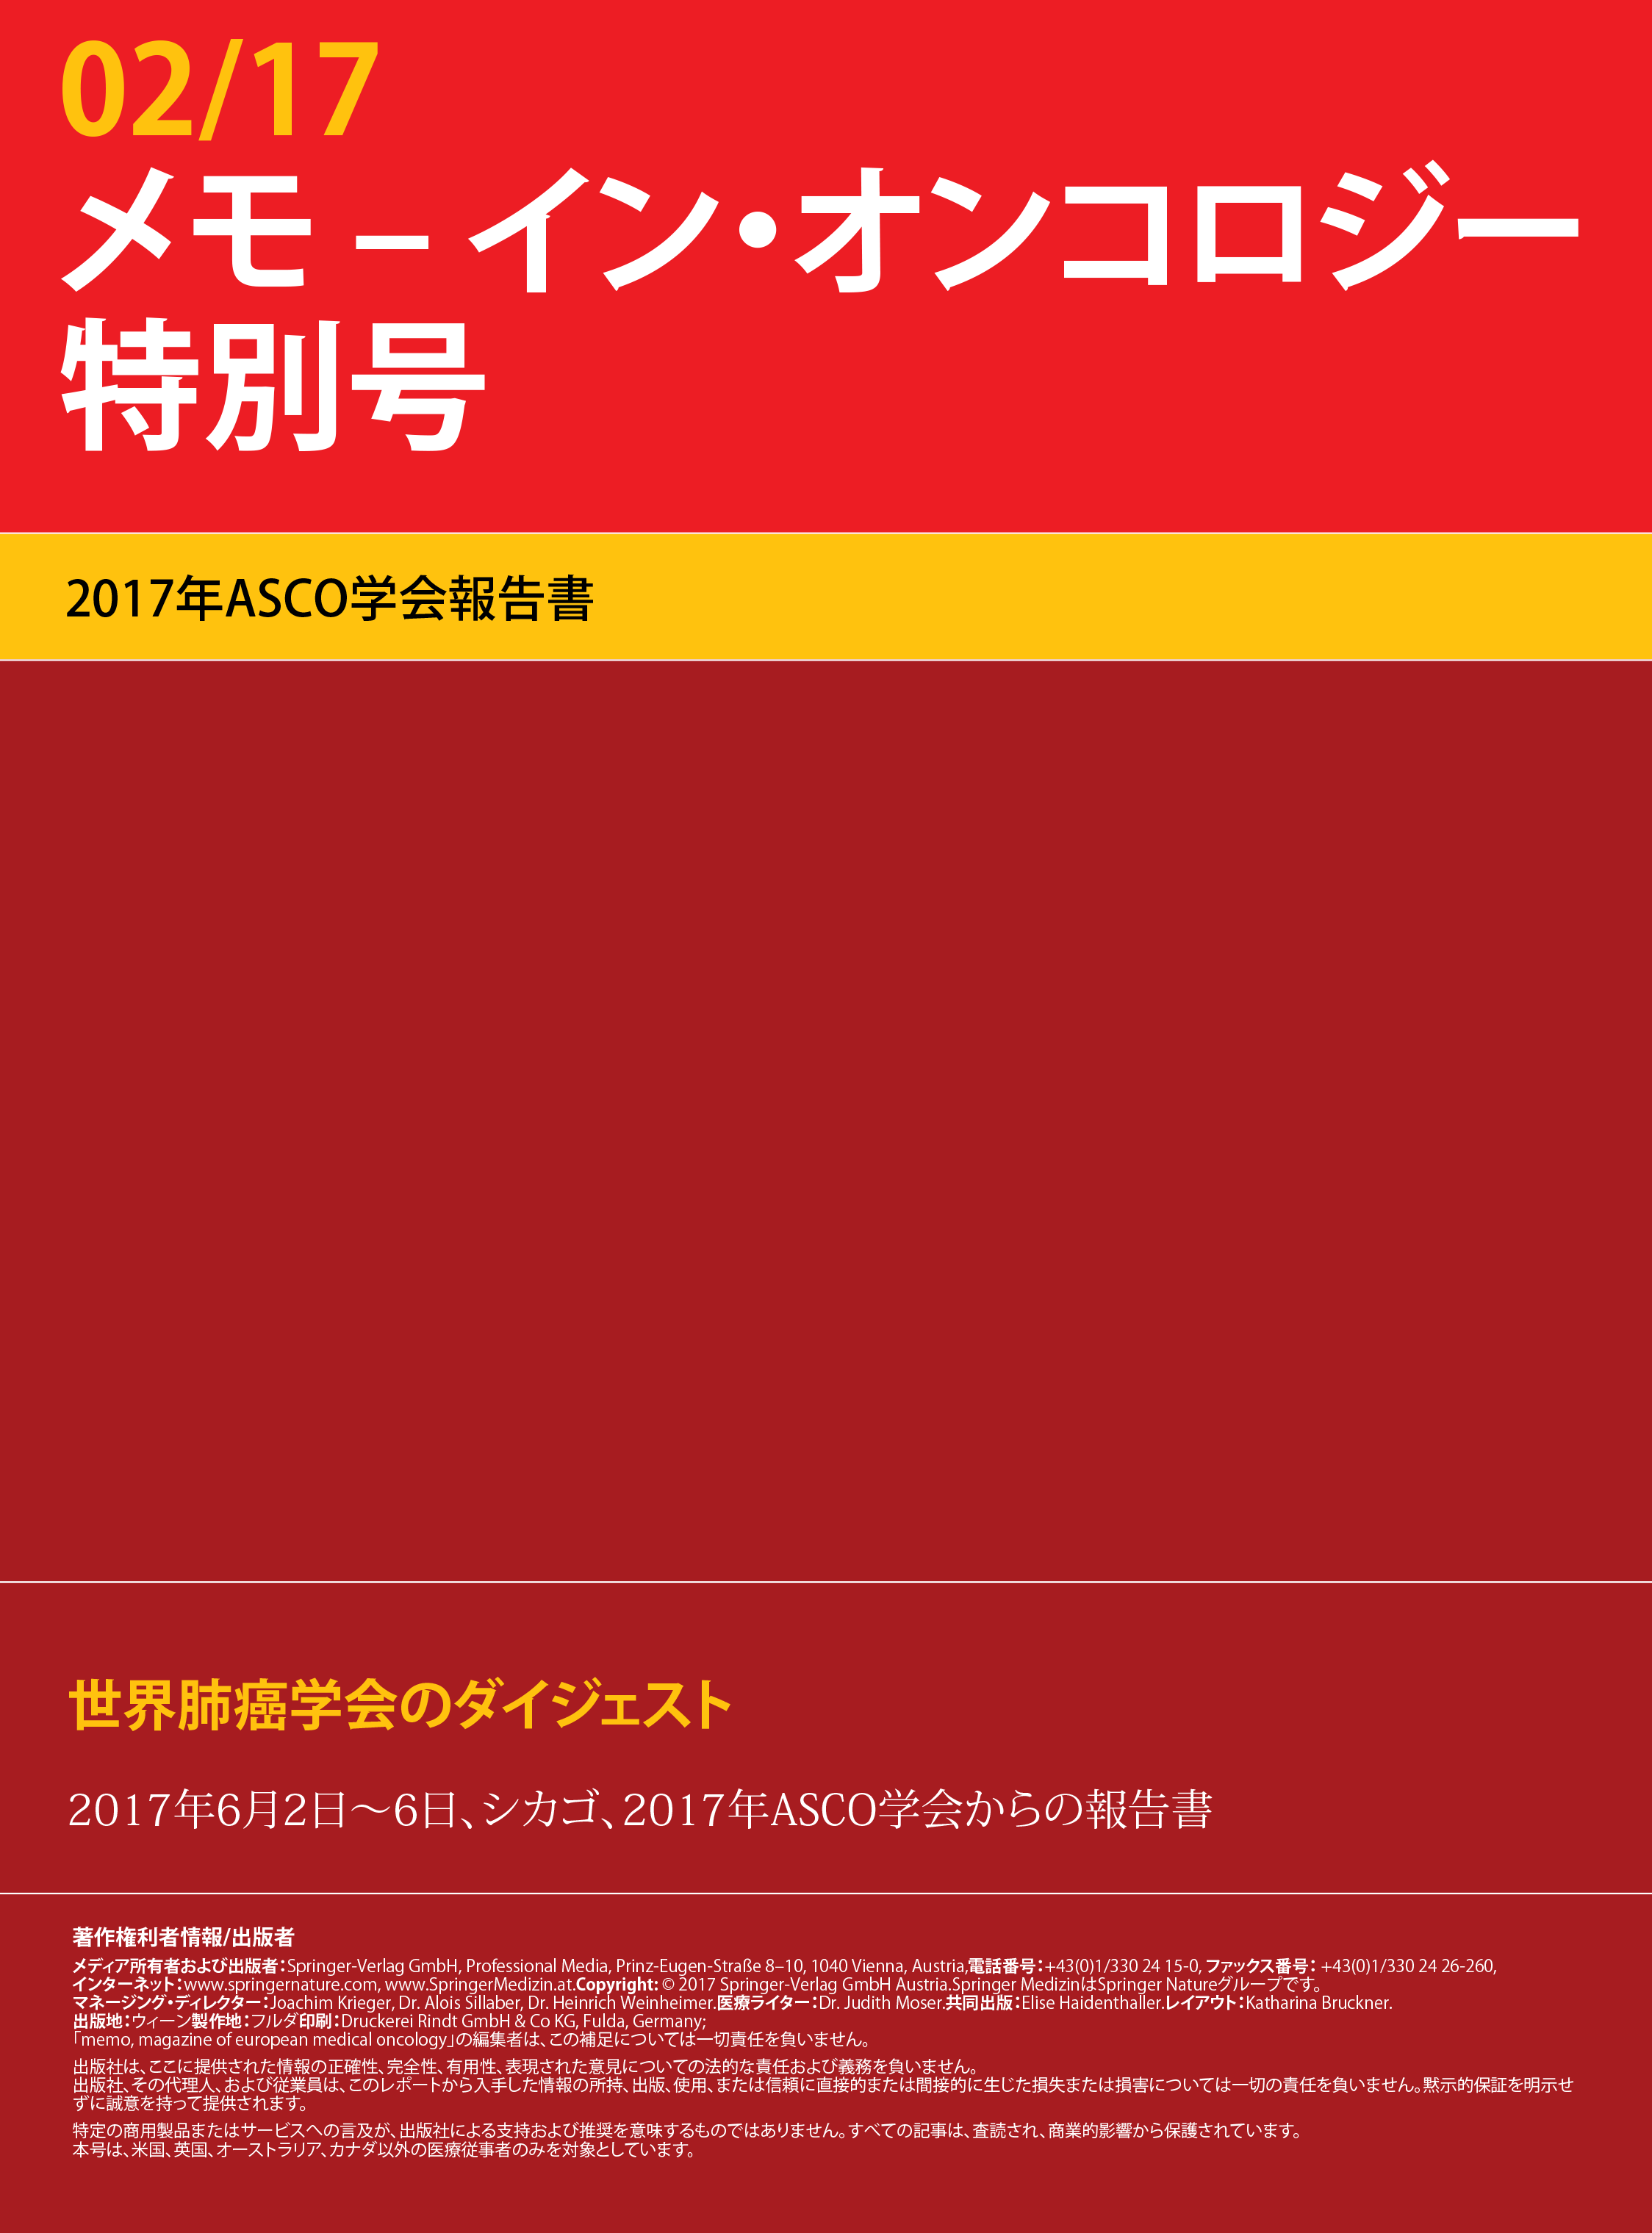 ASCO 2017 Japanese